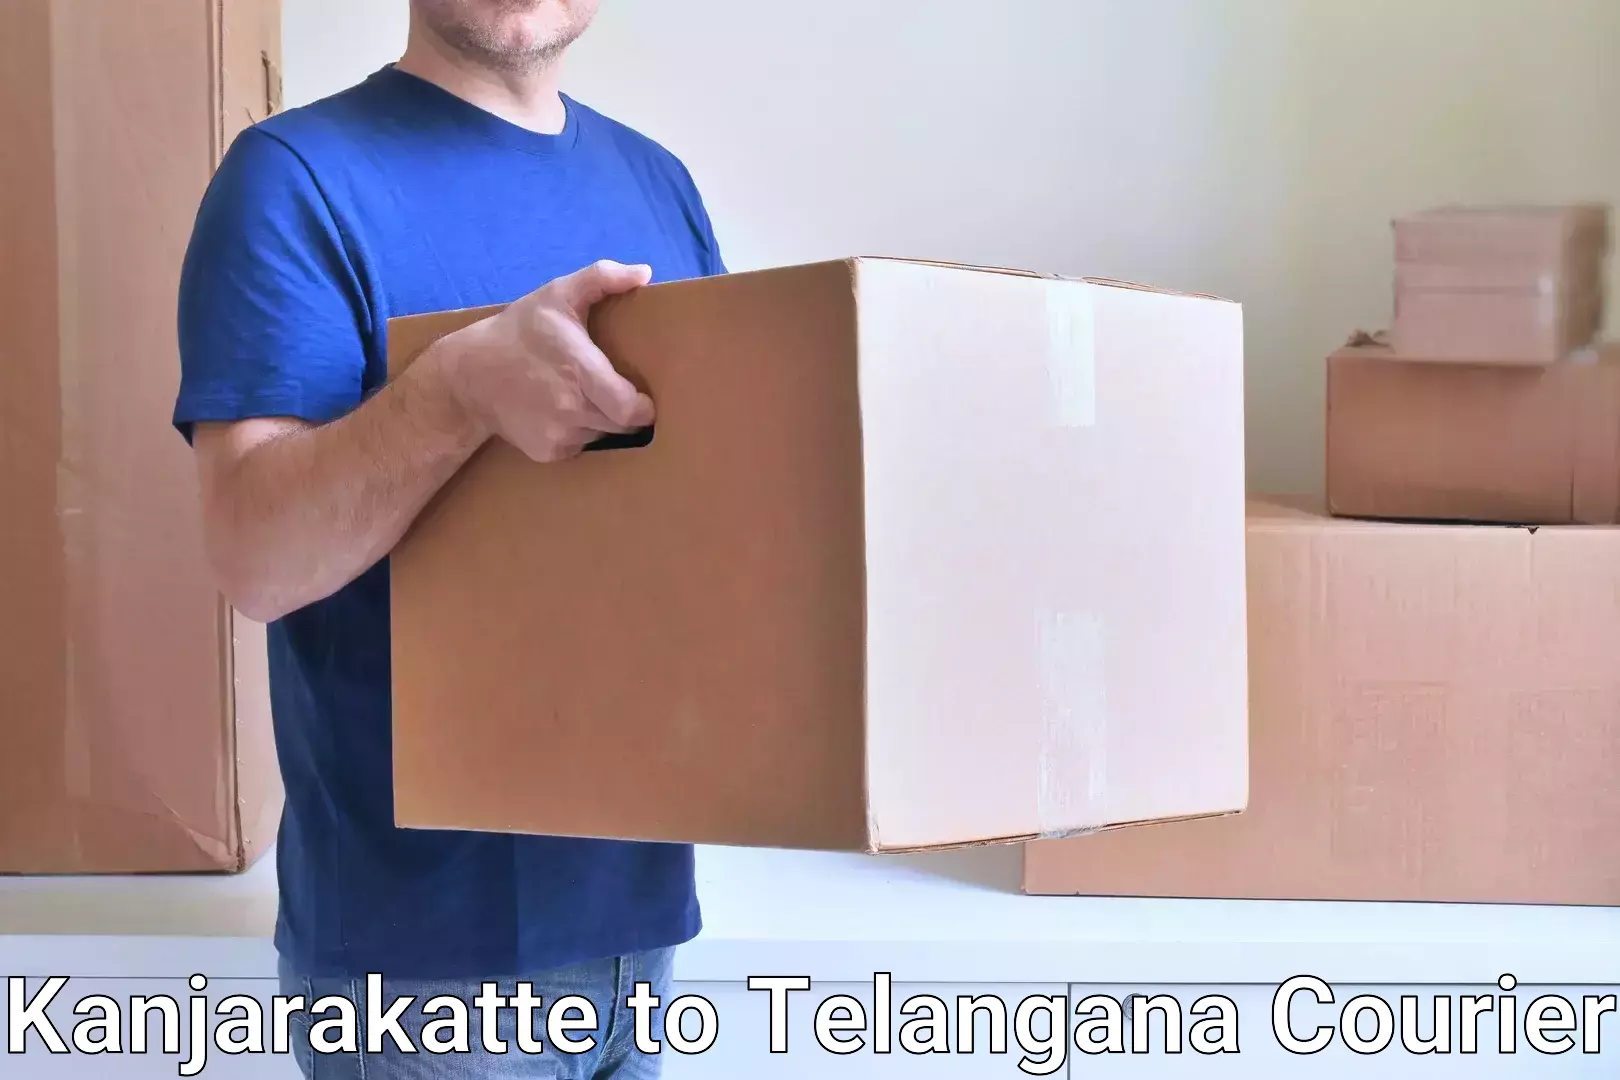 Nationwide courier service Kanjarakatte to Telangana